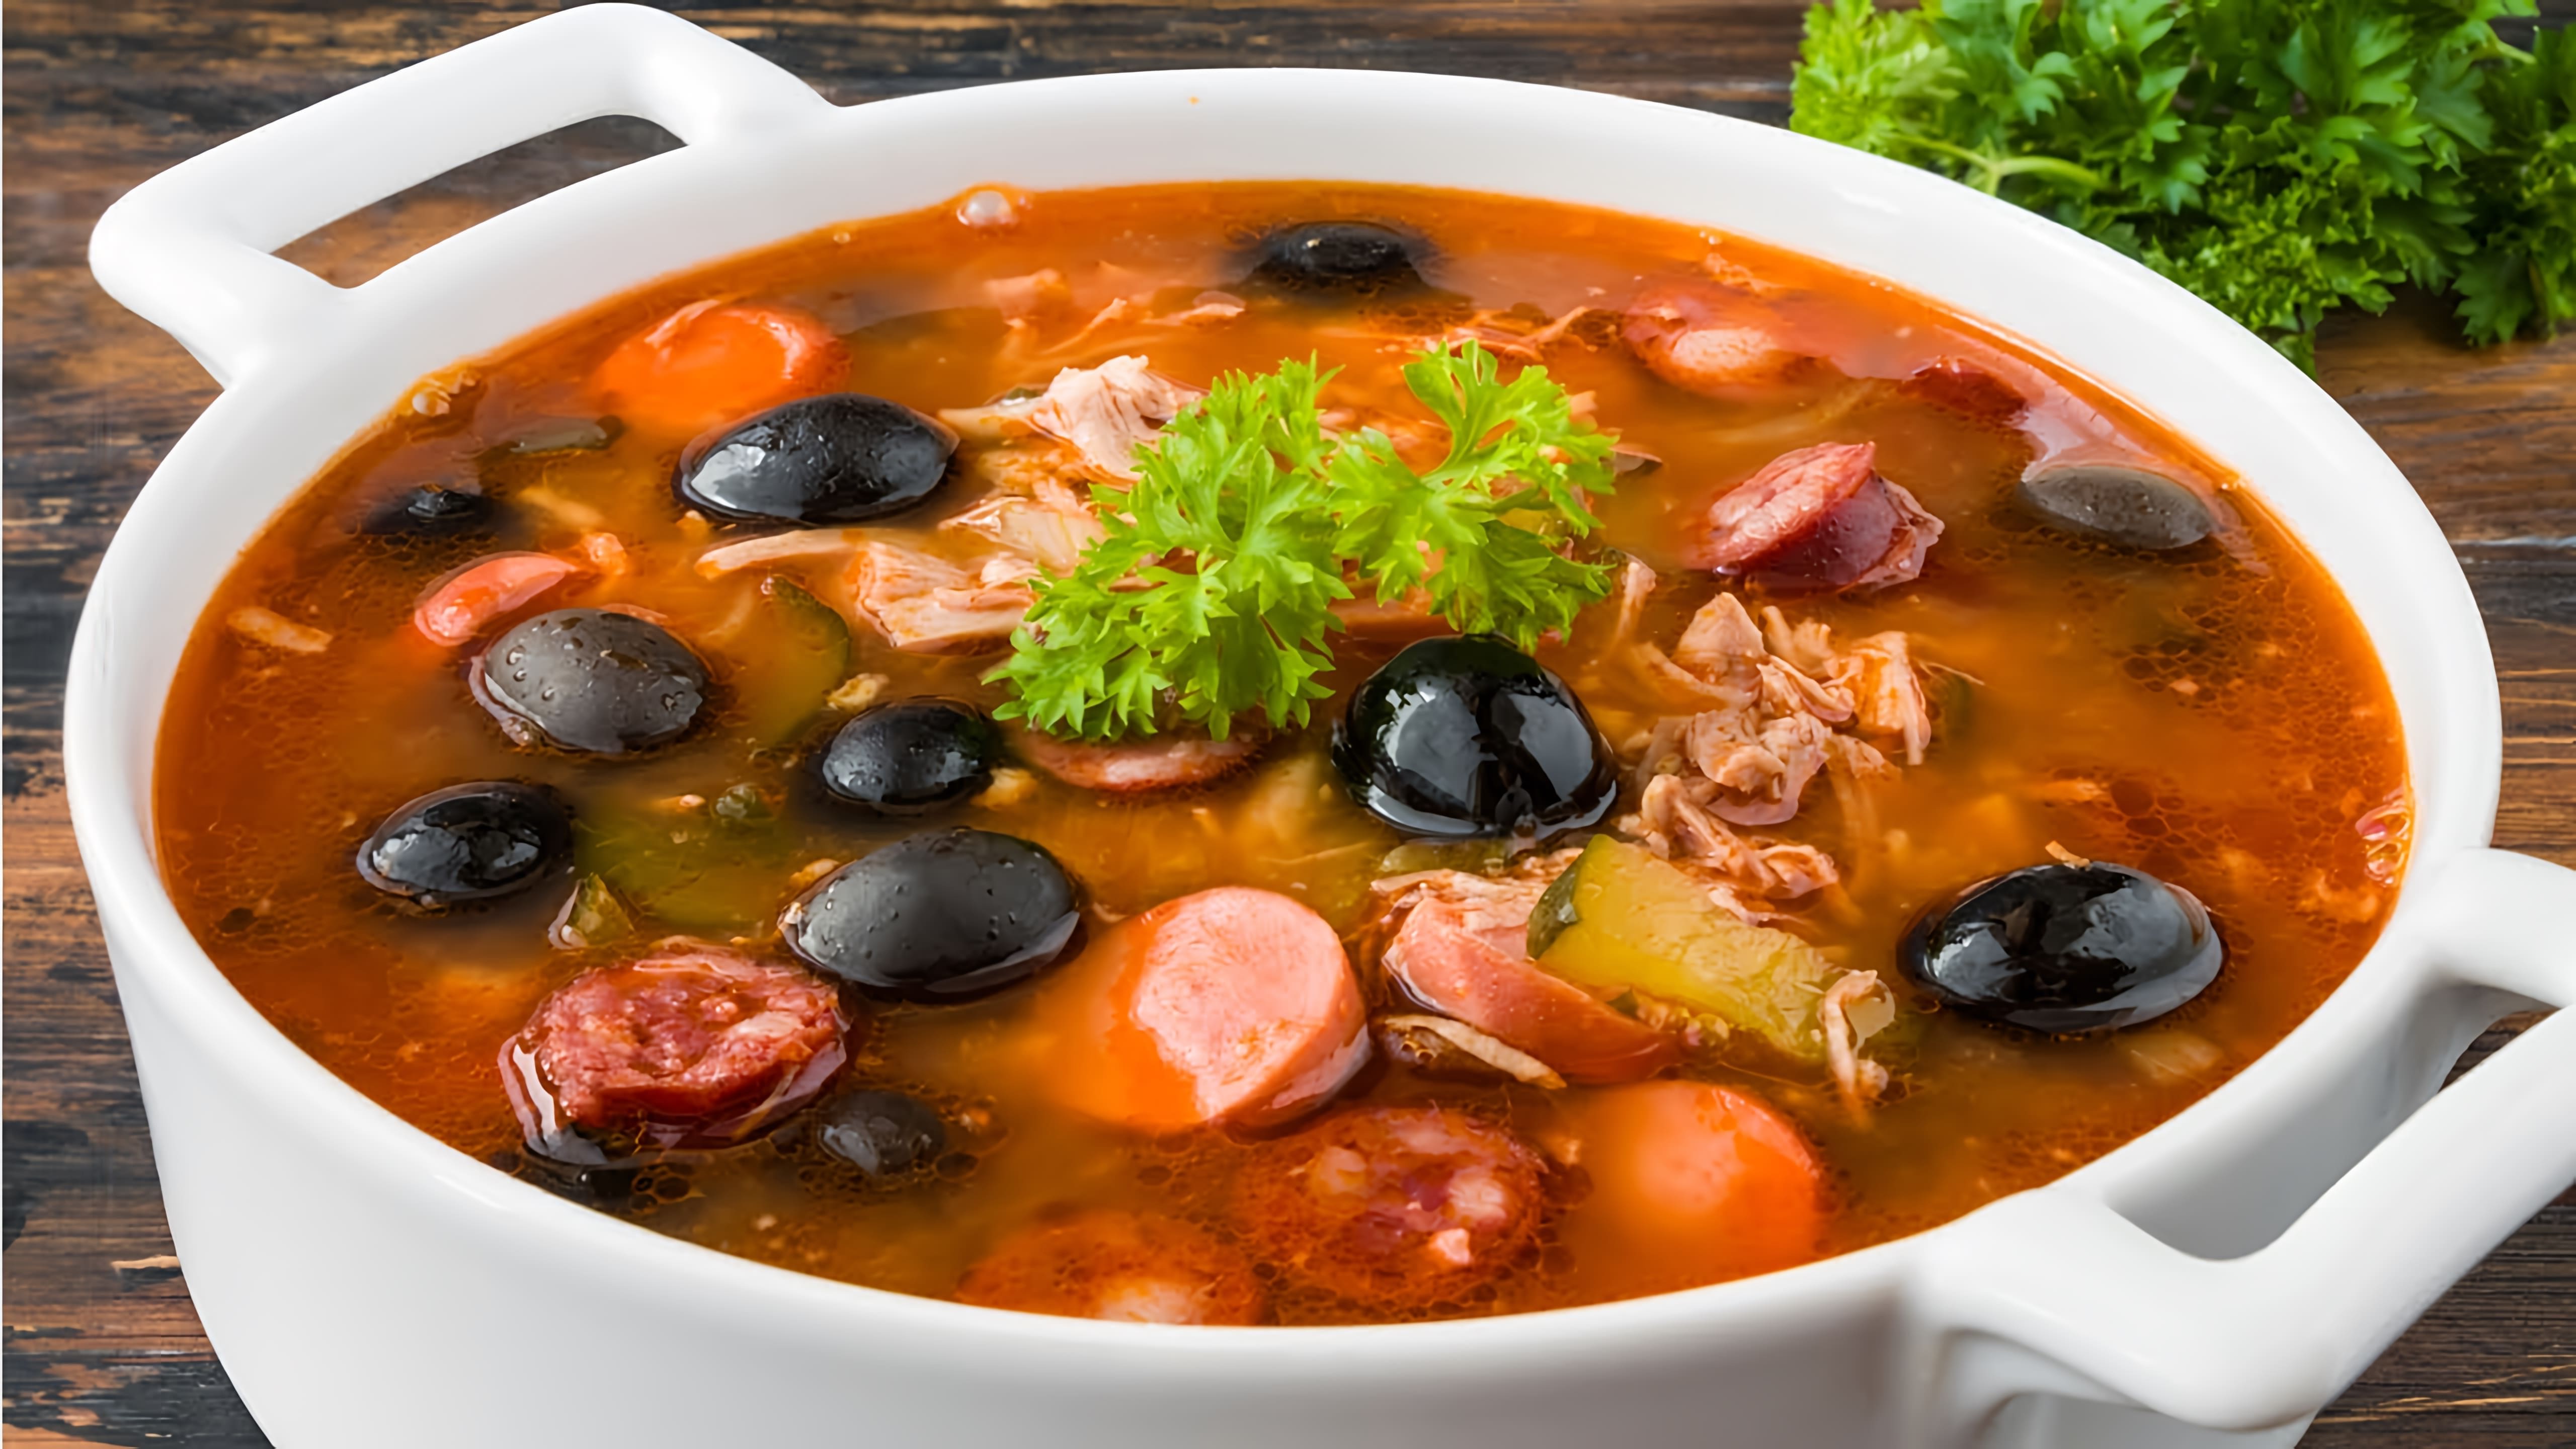 В этом видео демонстрируется рецепт приготовления солянки сборной мясной, одного из самых популярных и любимых супов